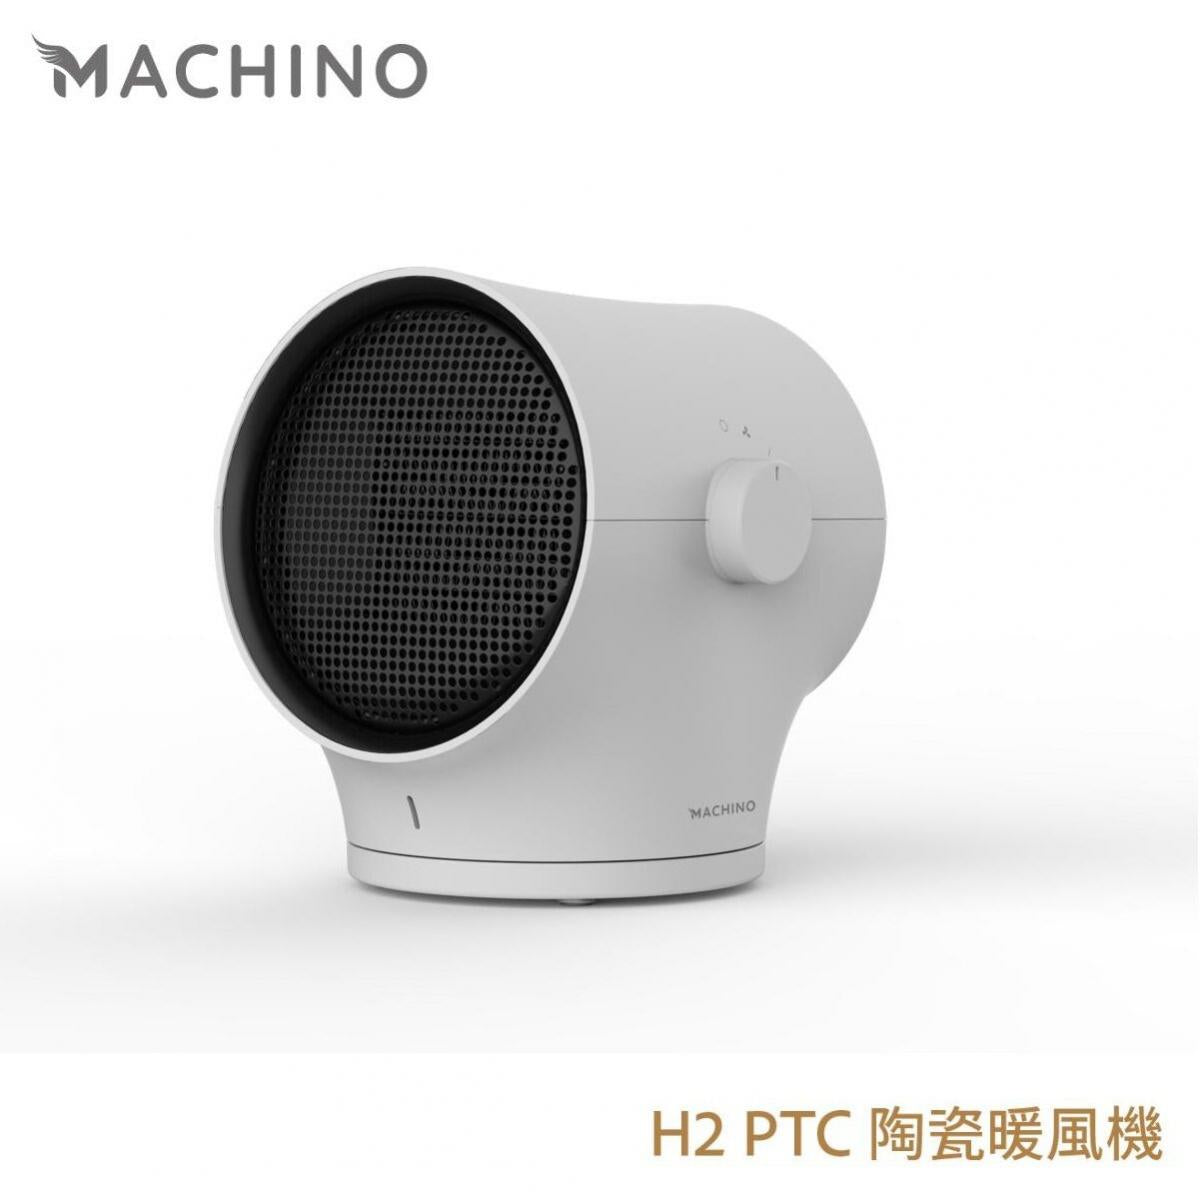 Machino - MACHINO H2 PTC 陶瓷暖風機｜暖電爐